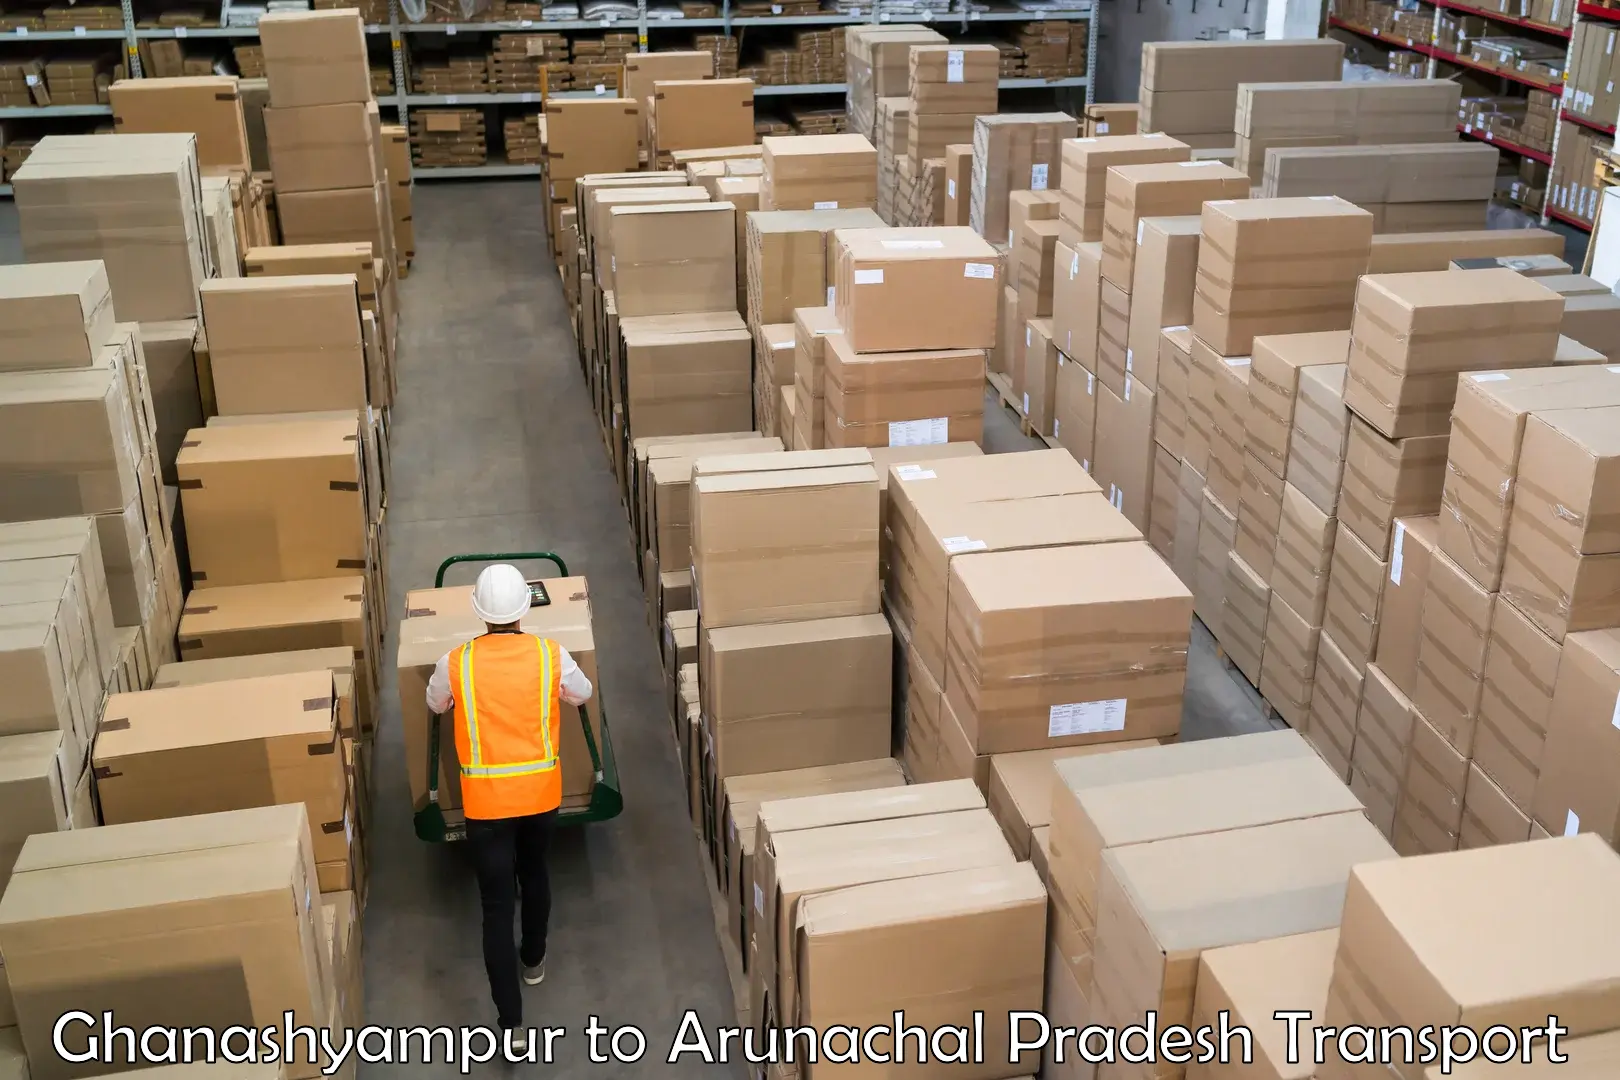 Shipping partner Ghanashyampur to Naharlagun